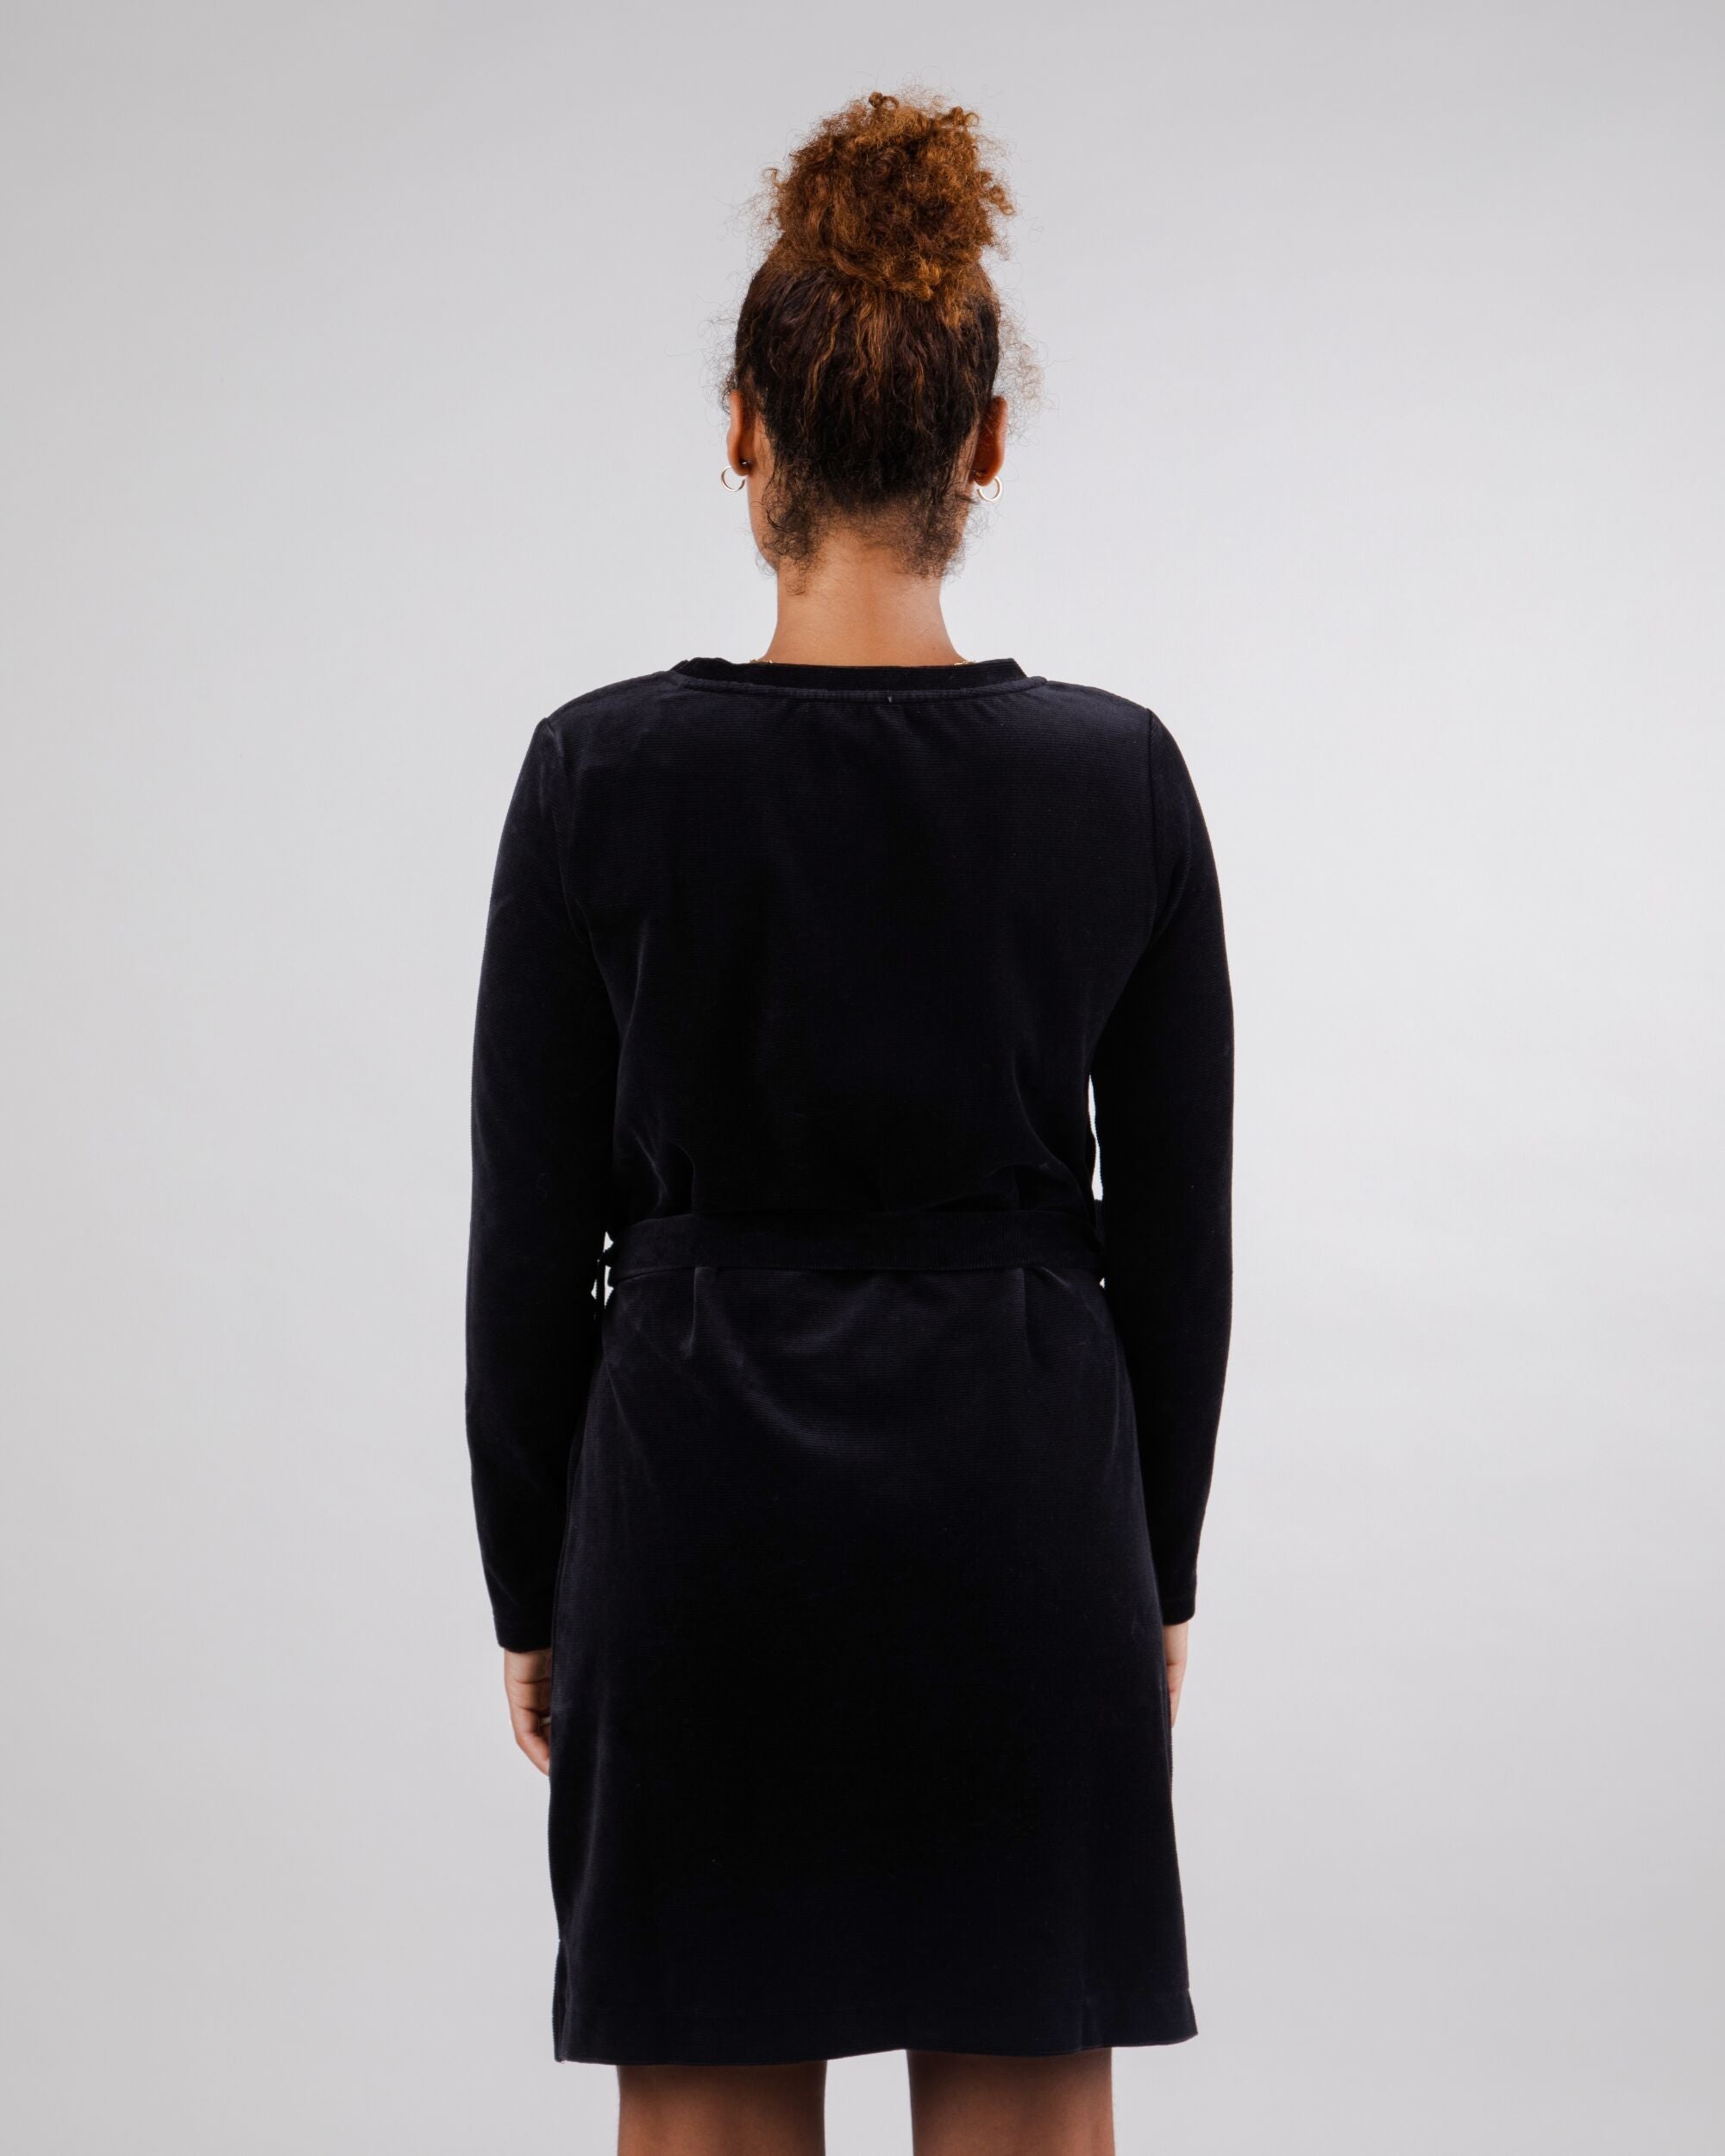 Dress with velvet belt in black from Brava Fabrics